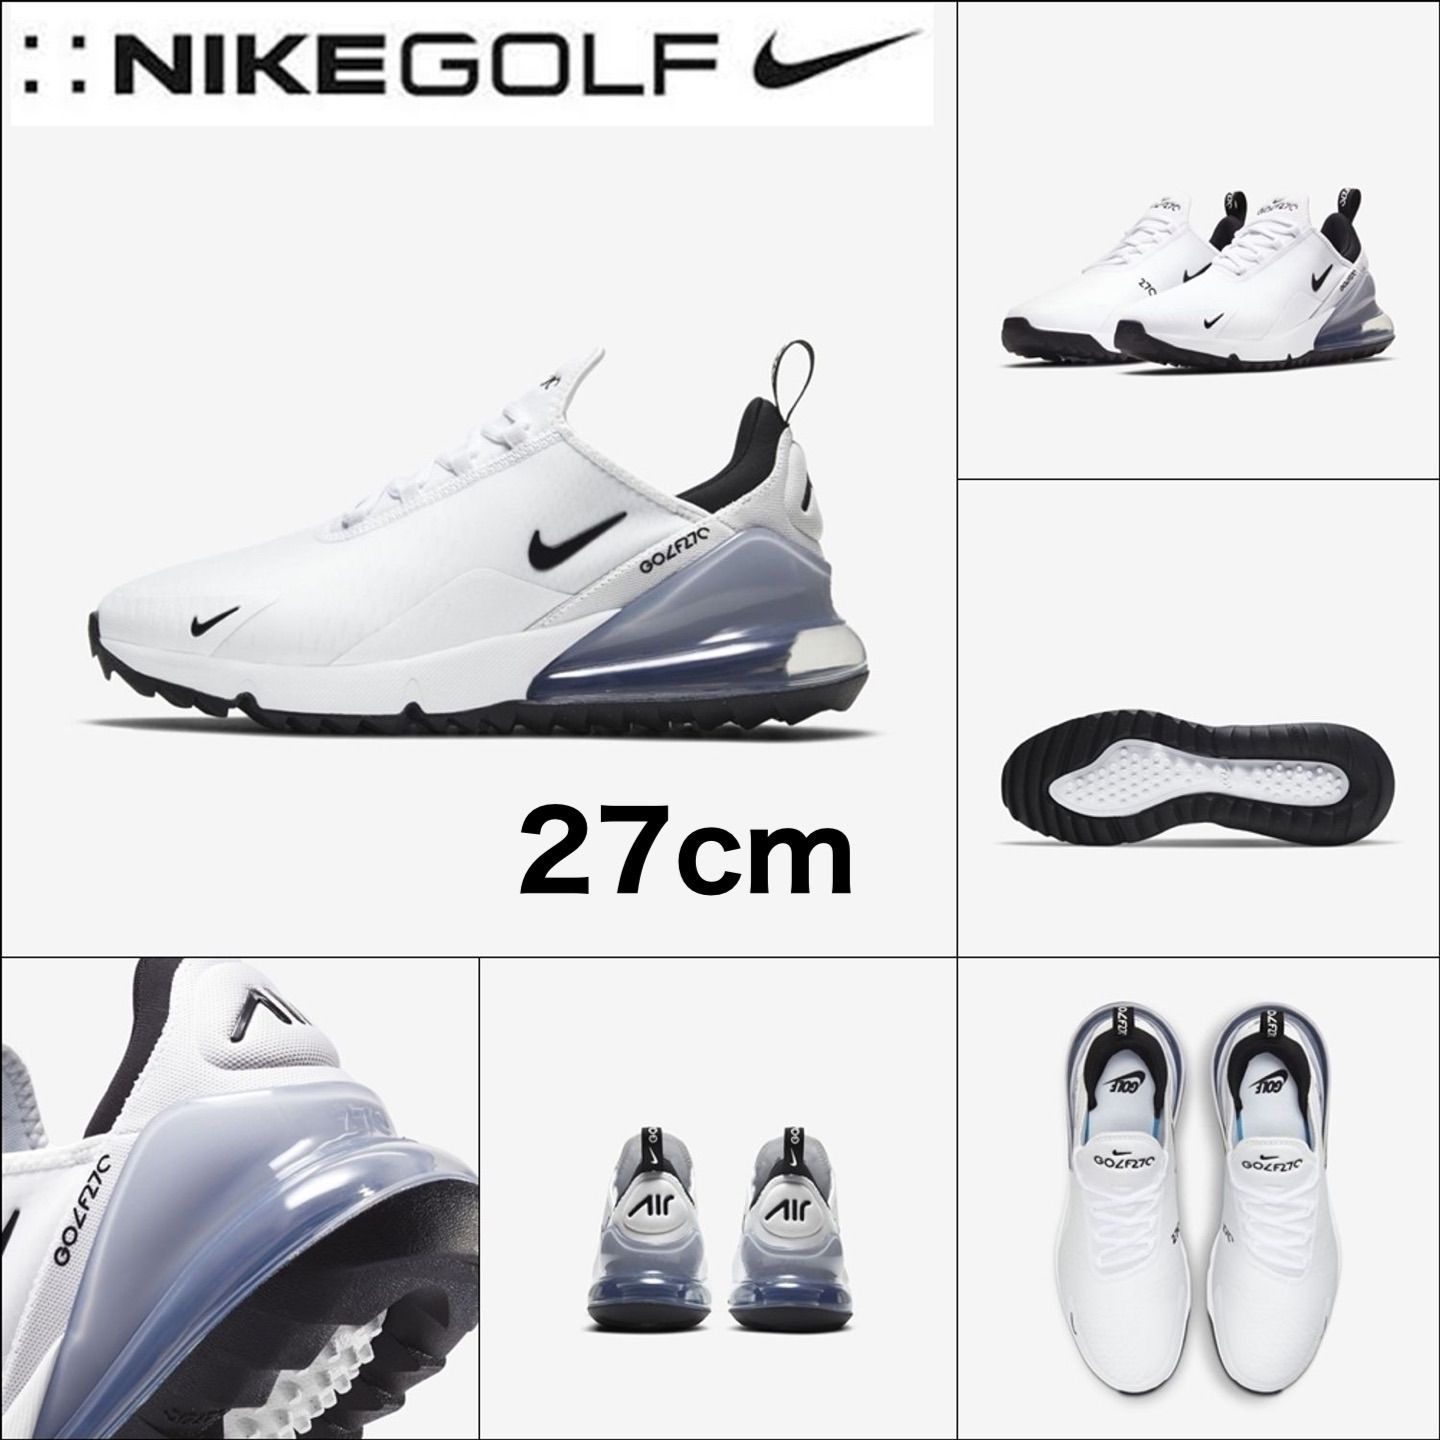 経典ブランド 特価 ナイキ NIKE 【値下げ】Nike GOLF エアマックス270G